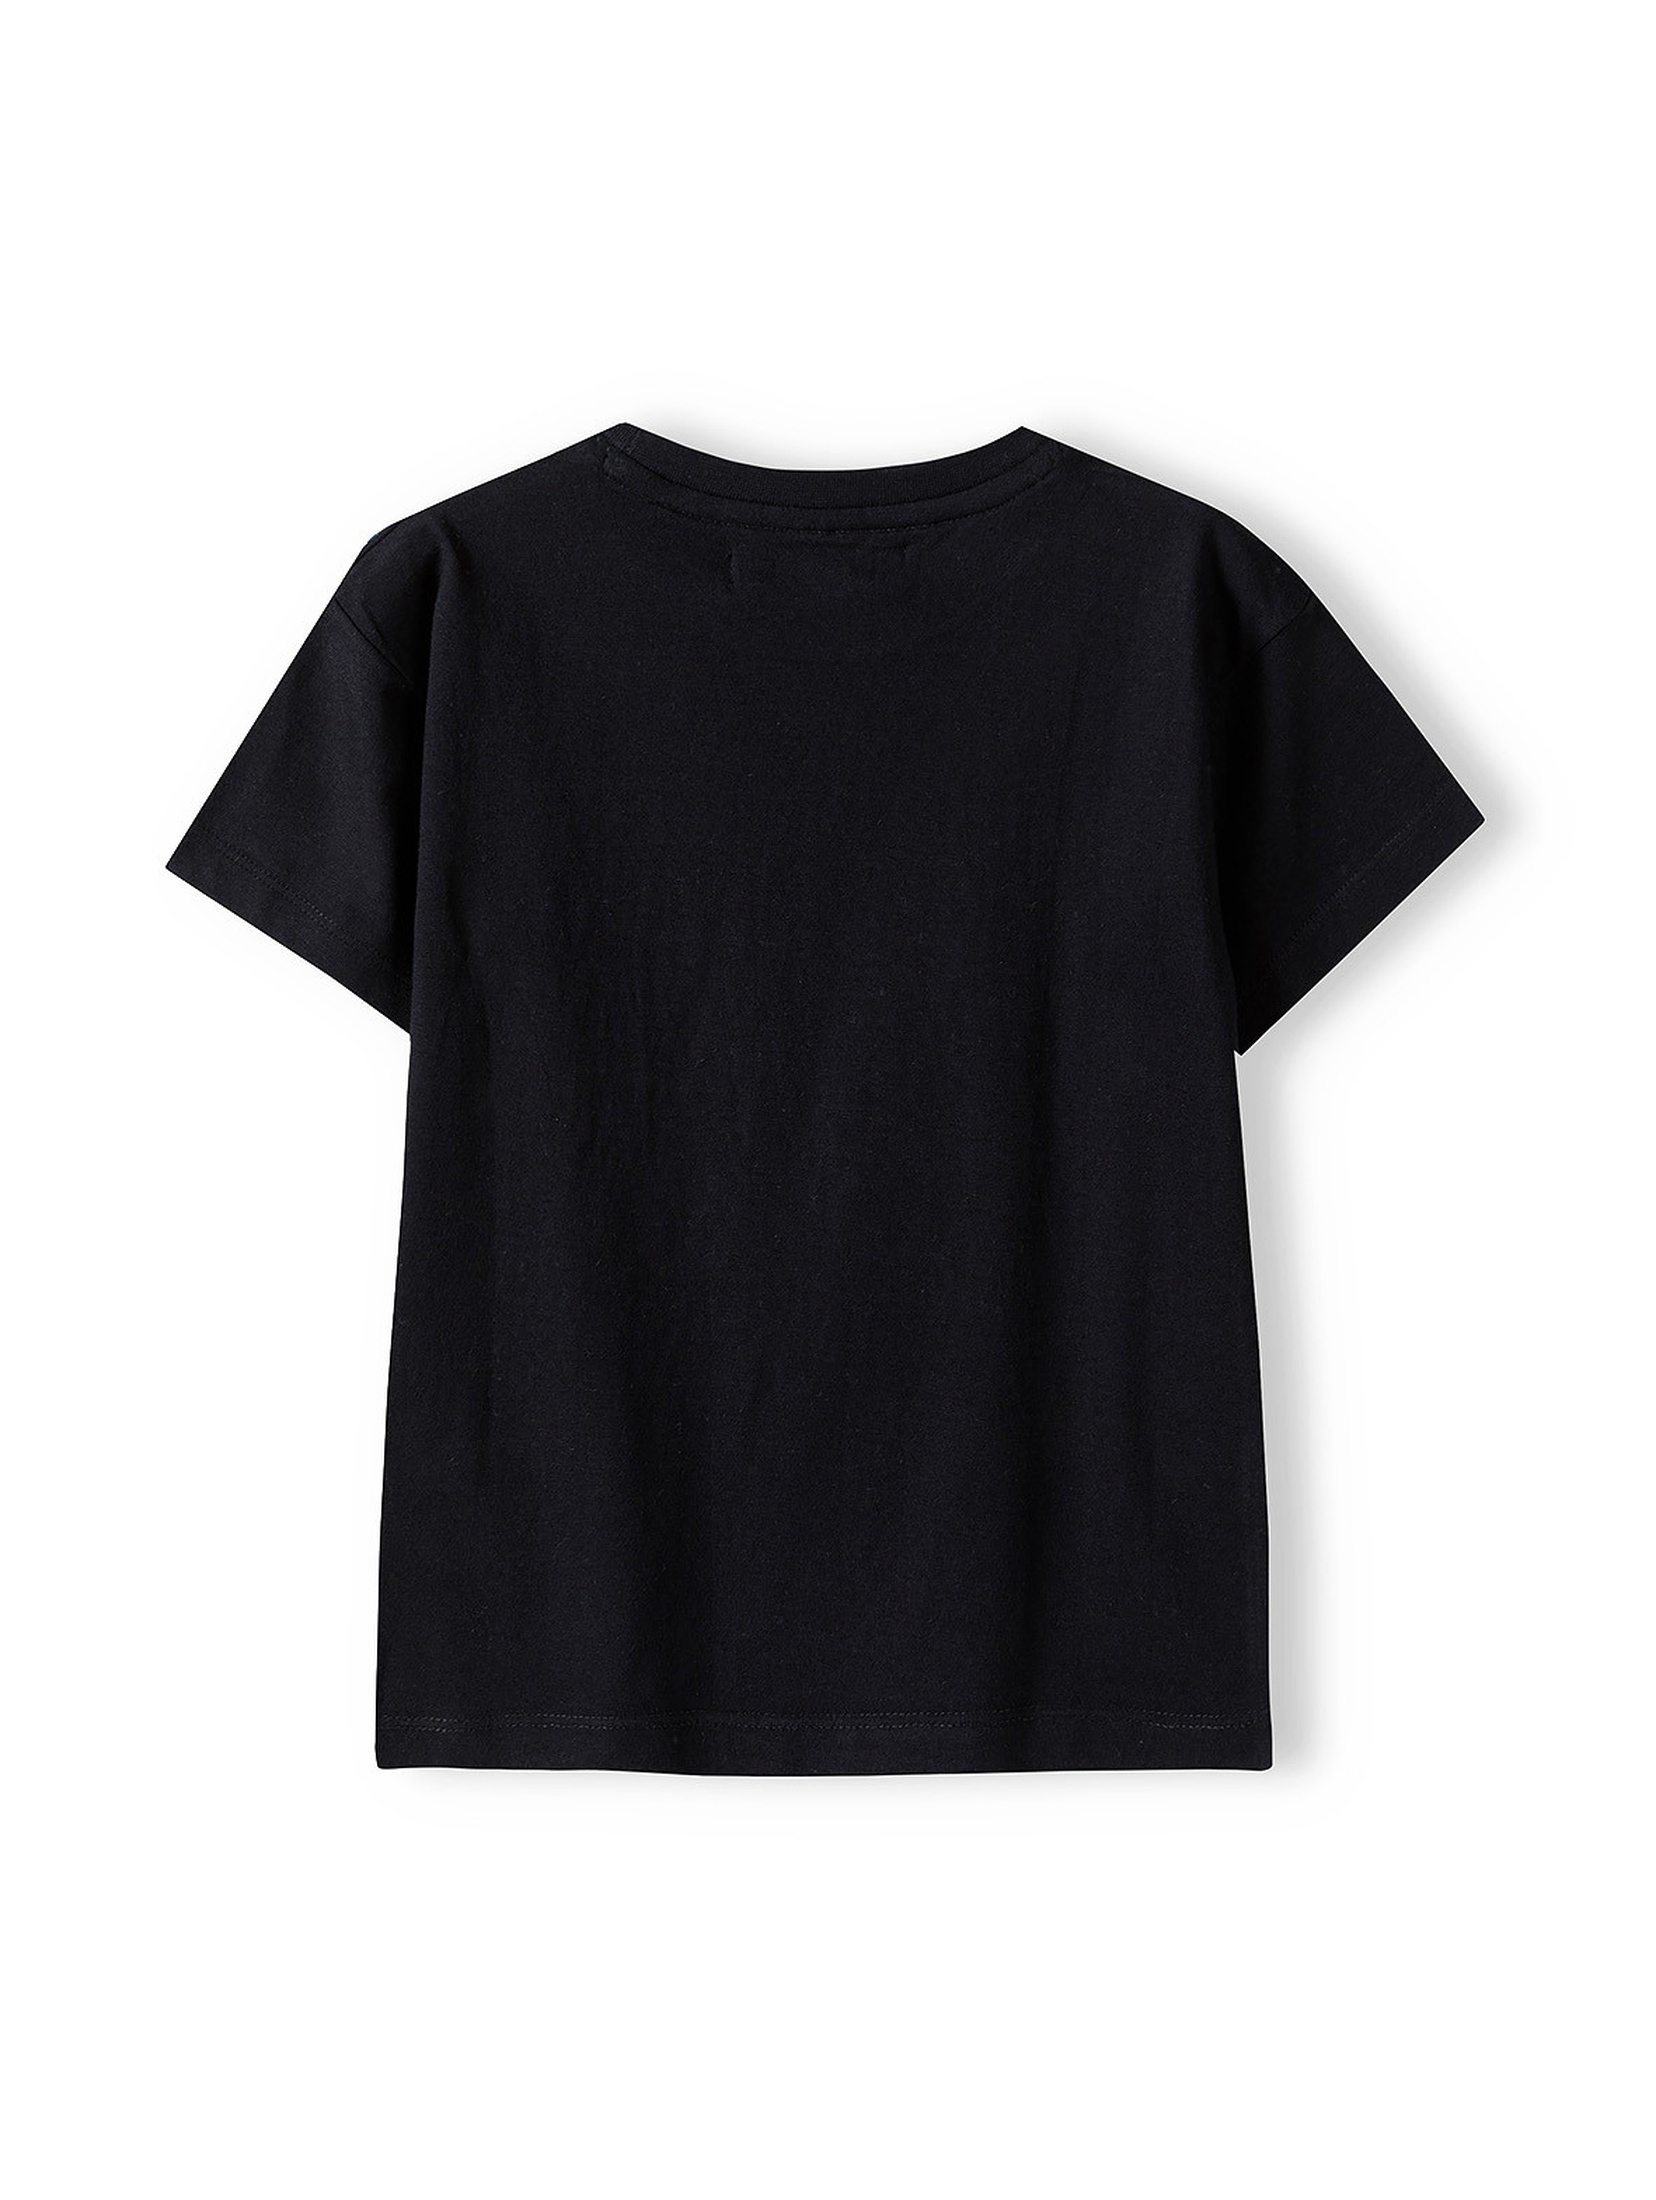 Czarny t-shirt dla małego chłopca z bawełny- RSPT